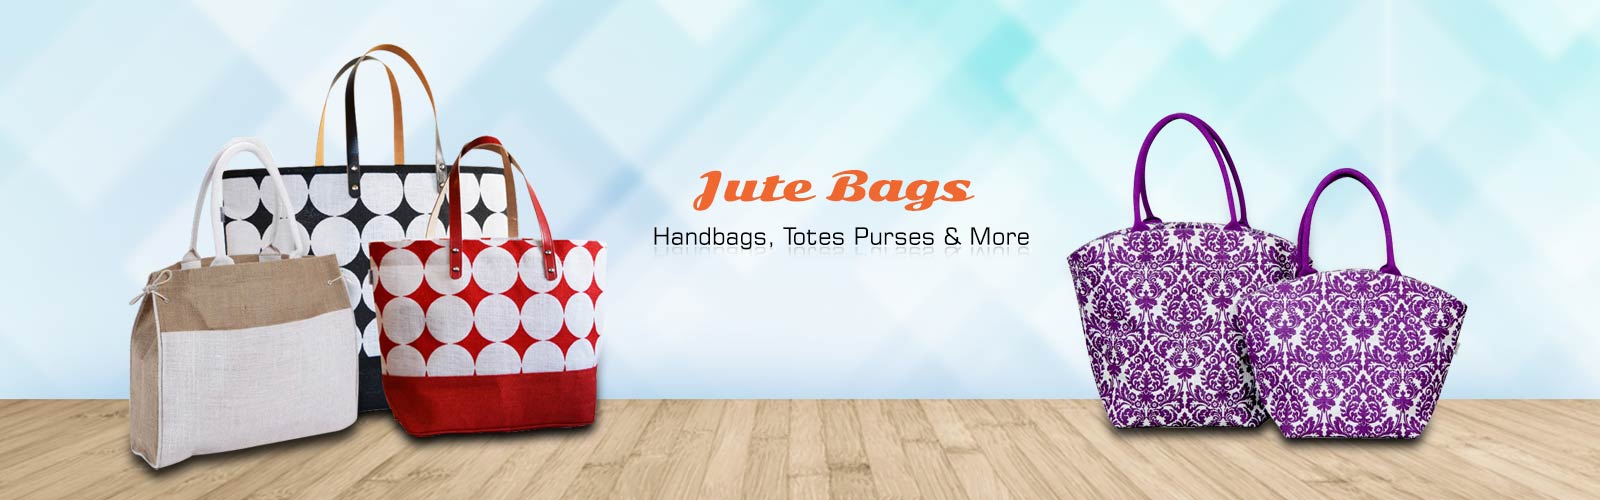 Wholesale Jute Bag Supplier in Paris